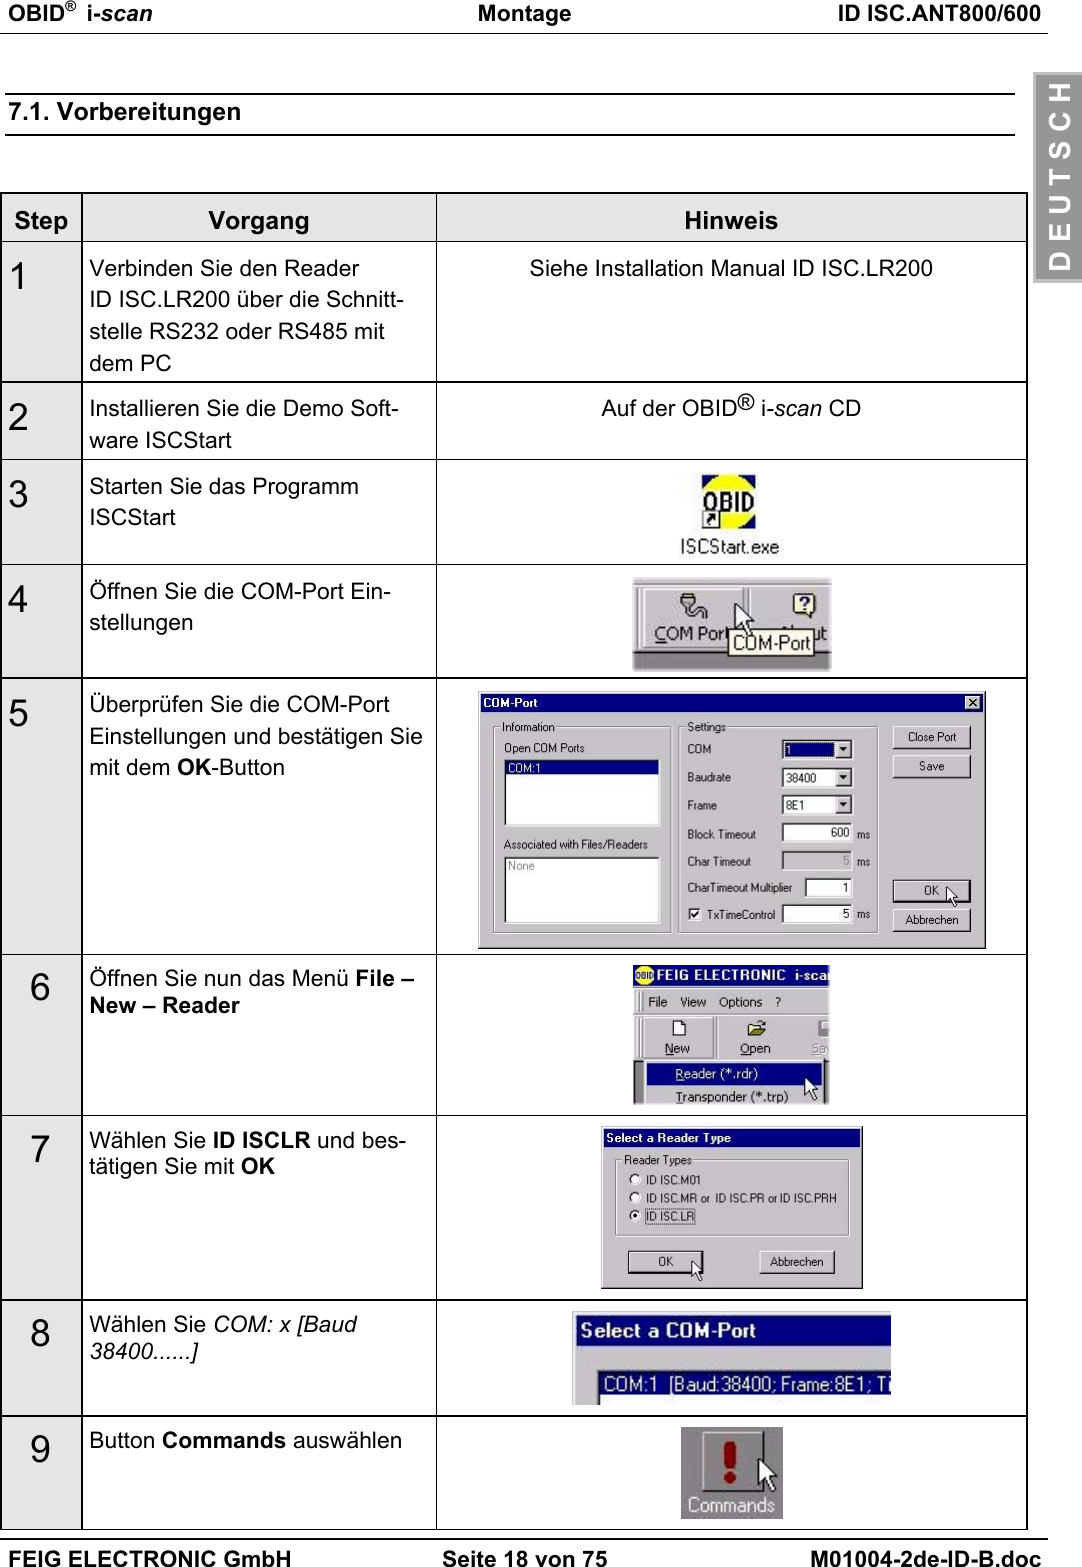 OBID®  i-scan Montage ID ISC.ANT800/600FEIG ELECTRONIC GmbH Seite 18 von 75 M01004-2de-ID-B.docD E U T S C H7.1. VorbereitungenStep Vorgang Hinweis1Verbinden Sie den ReaderID ISC.LR200 über die Schnitt-stelle RS232 oder RS485 mitdem PCSiehe Installation Manual ID ISC.LR2002Installieren Sie die Demo Soft-ware ISCStartAuf der OBID® i-scan CD3Starten Sie das ProgrammISCStart4Öffnen Sie die COM-Port Ein-stellungen5Überprüfen Sie die COM-PortEinstellungen und bestätigen Siemit dem OK-Button6Öffnen Sie nun das Menü File –New – Reader7Wählen Sie ID ISCLR und bes-tätigen Sie mit OK8Wählen Sie COM: x [Baud38400......]9Button Commands auswählen